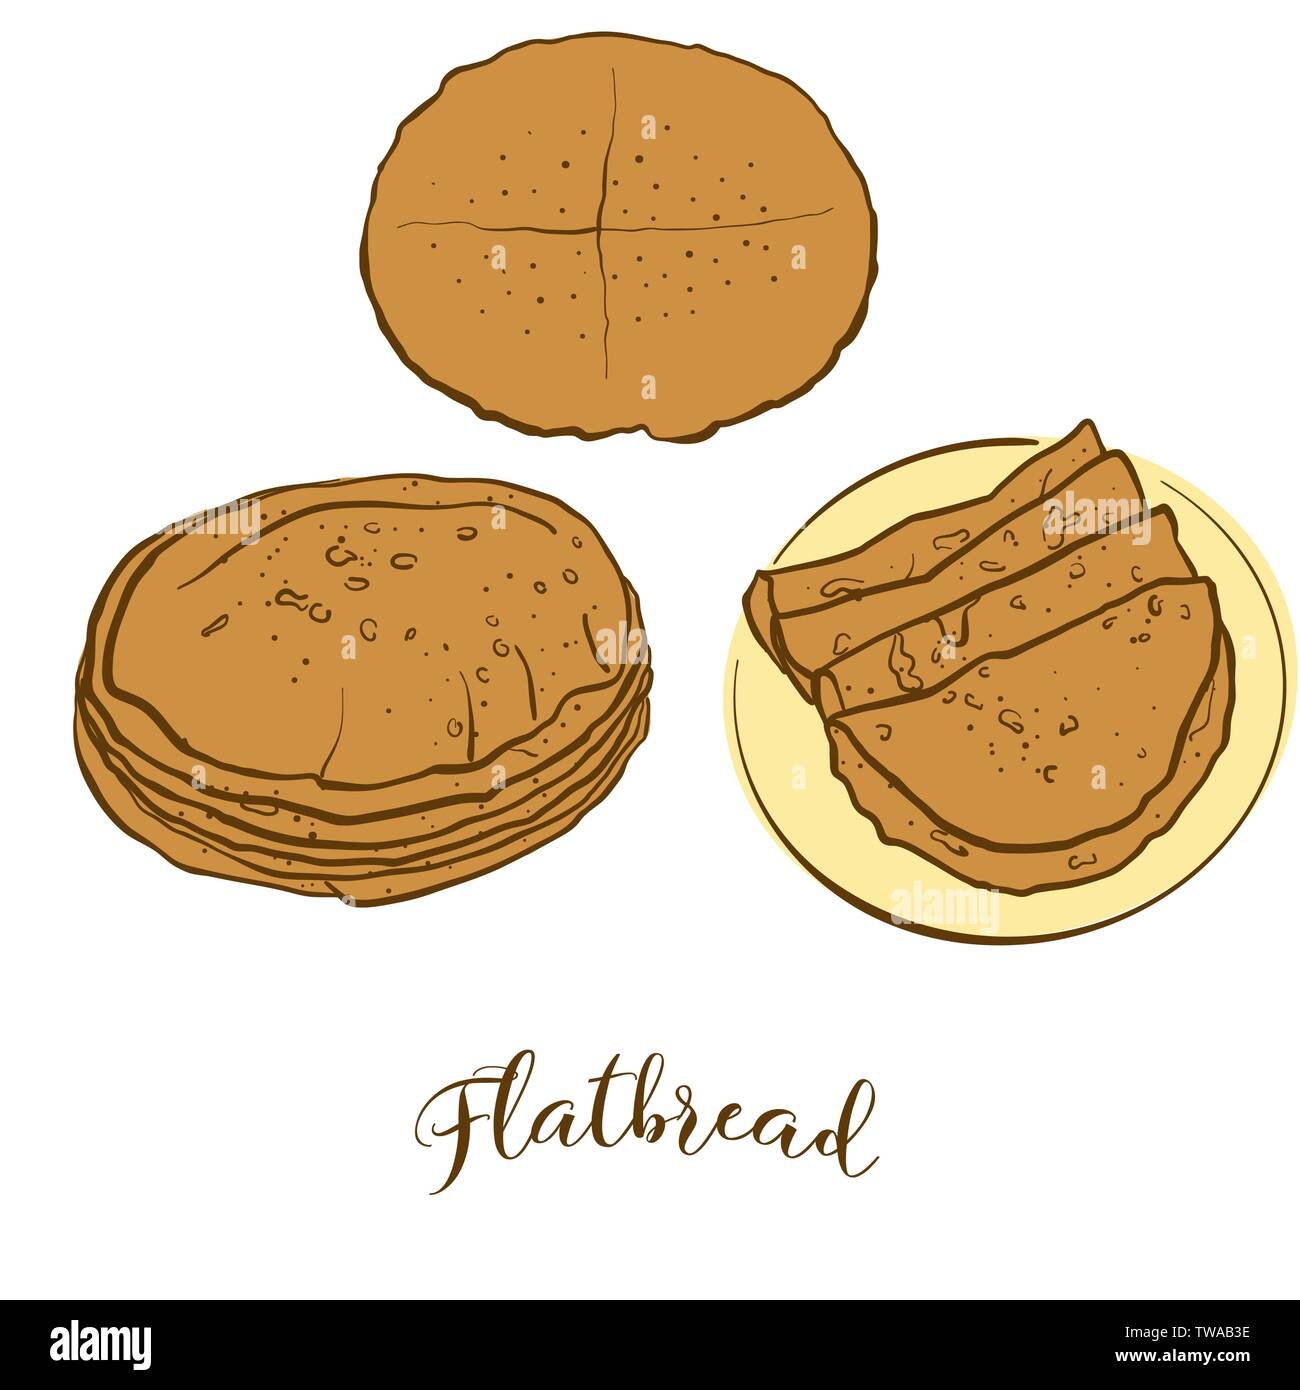 Farbige Skizzen von Fladenbrot Brot. Vektor Zeichnung von Fladenbrot Essen, in der Regel bekannt. Farbige Brot Abbildung Serie. Stock Vektor